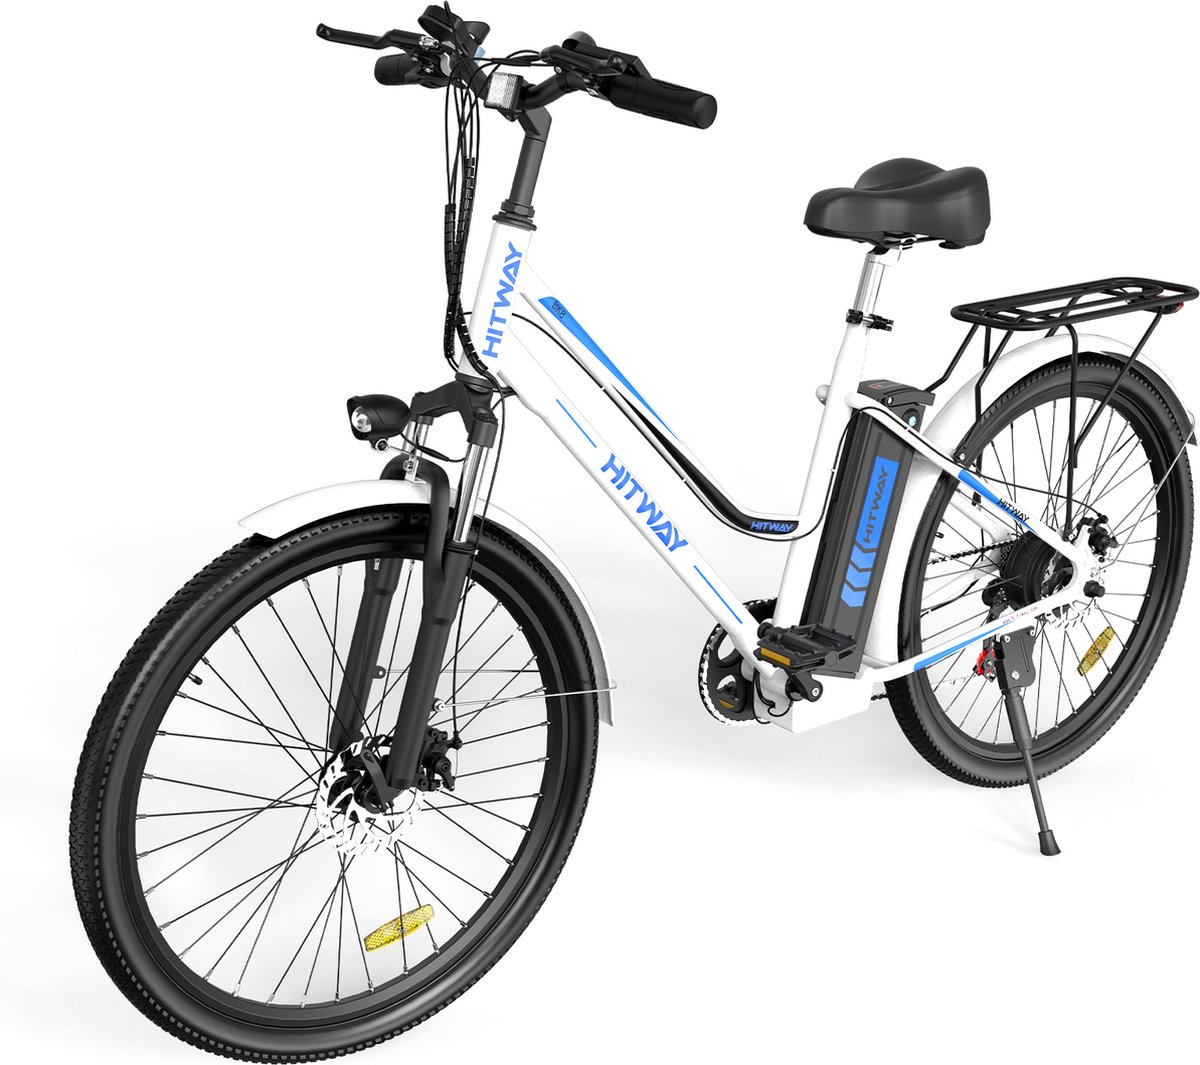 P4B - Elektrische fiets - E-bike - Stadsfiets - Fiets - 1 Jaar Garantie - Legaal openbare weg